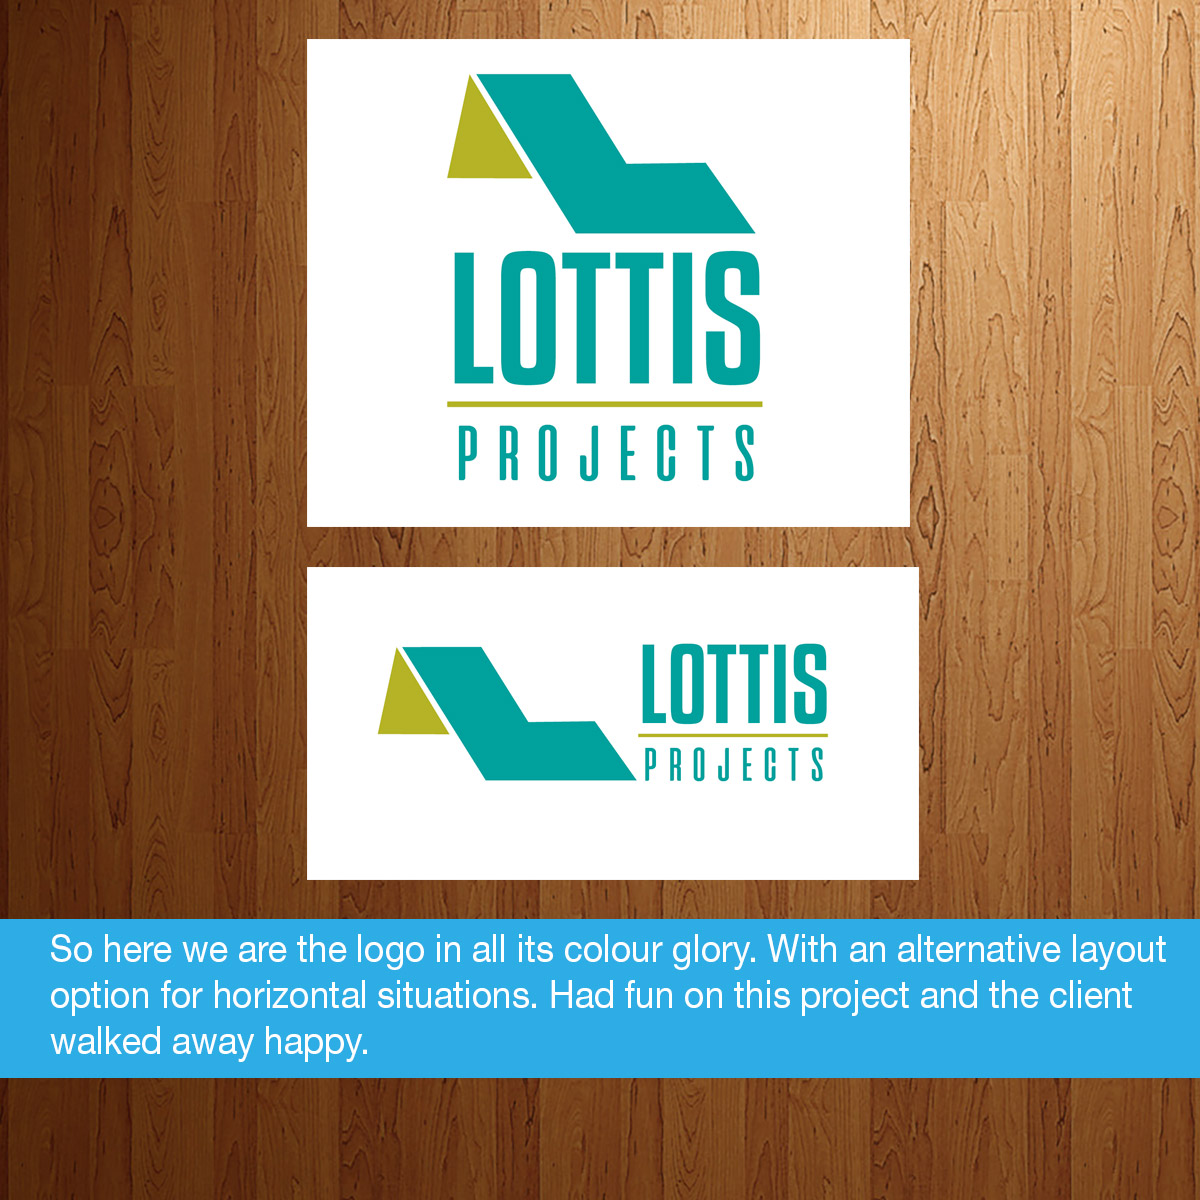 Portfolio-design-Lottis6-2018.jpg